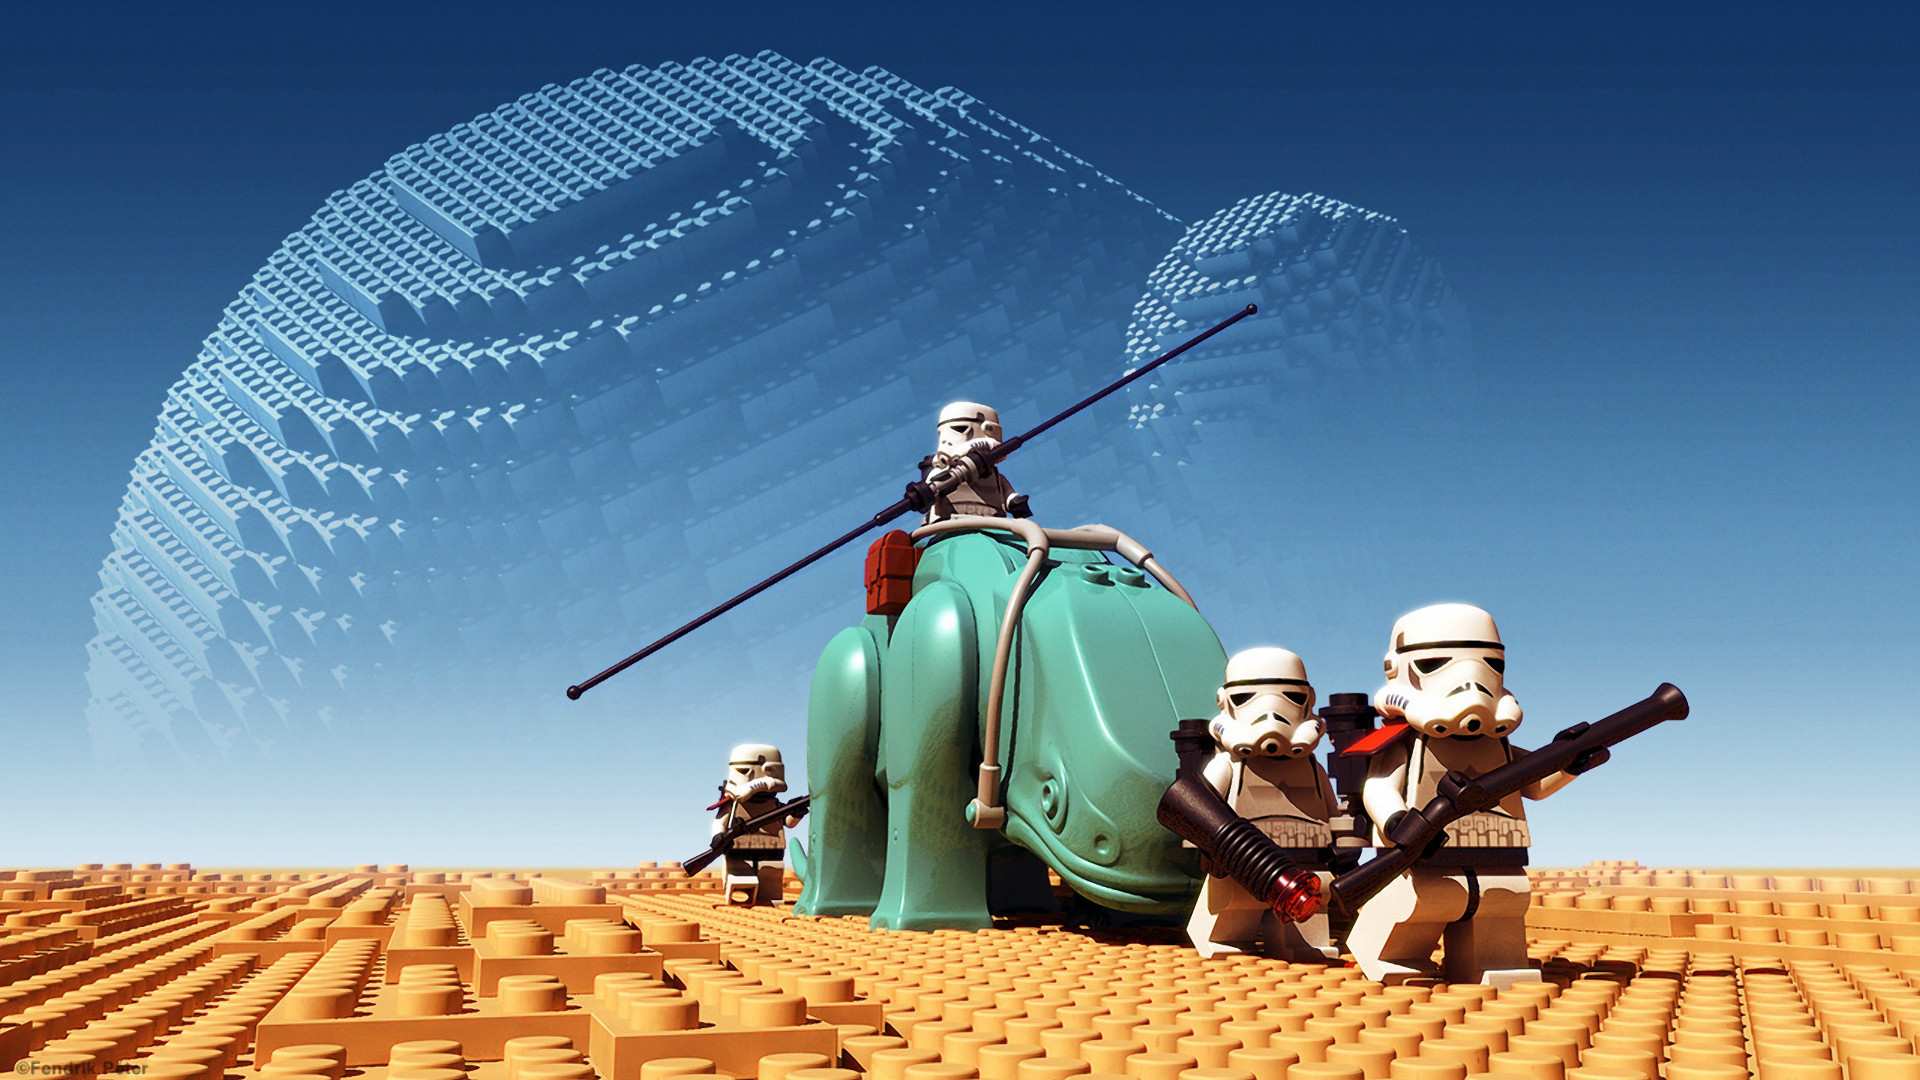 PeterFendrik's Brick Patrol 3D Lego Star Wars by Peter Fendrik